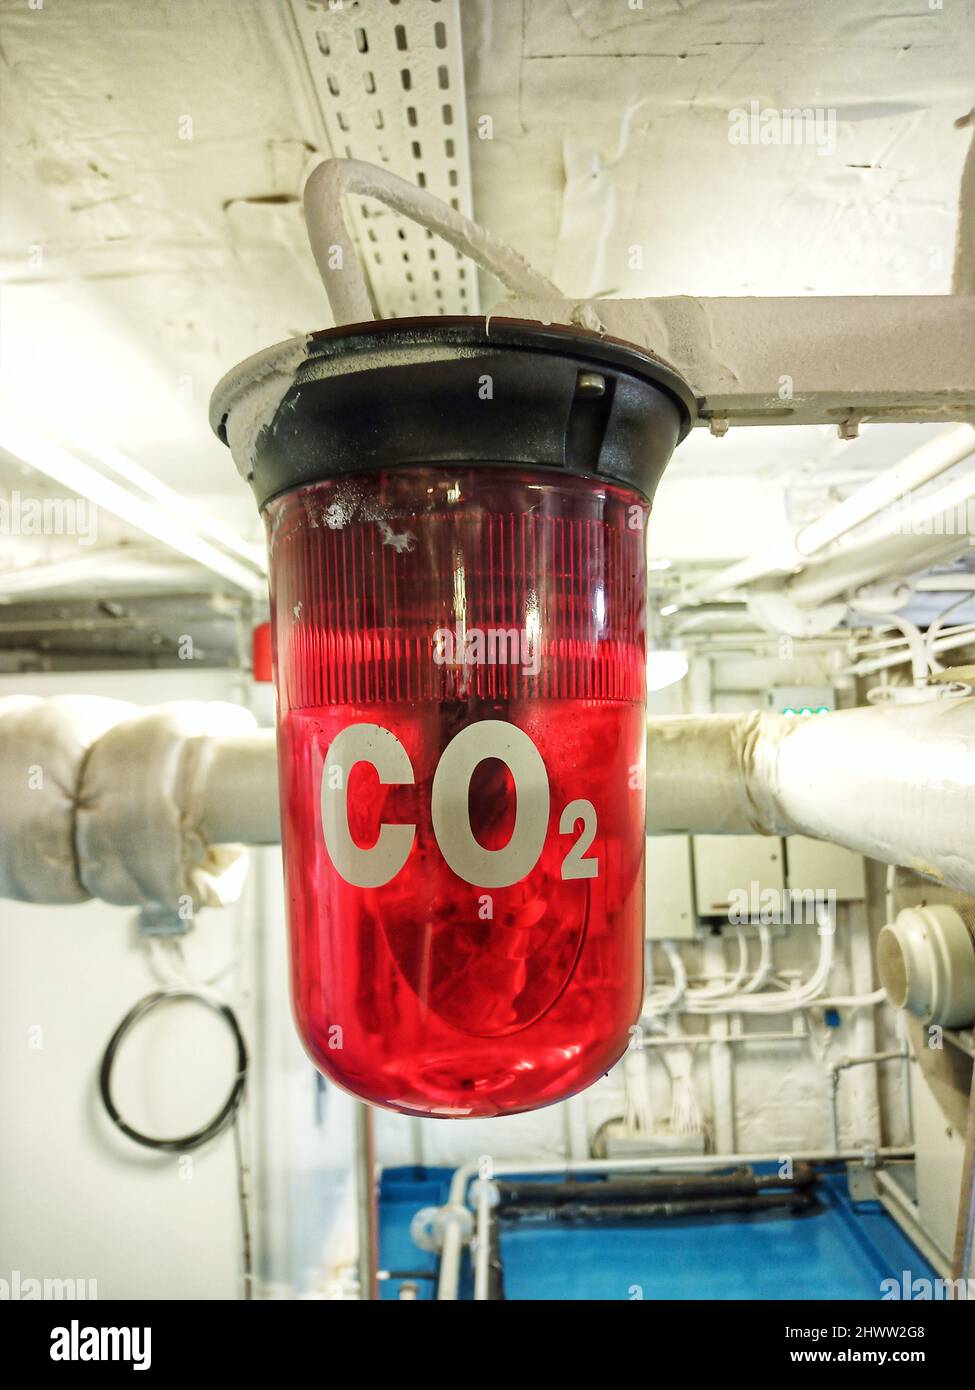 CO2 Feuerlöscher im Einsatz Stock Photo - Alamy